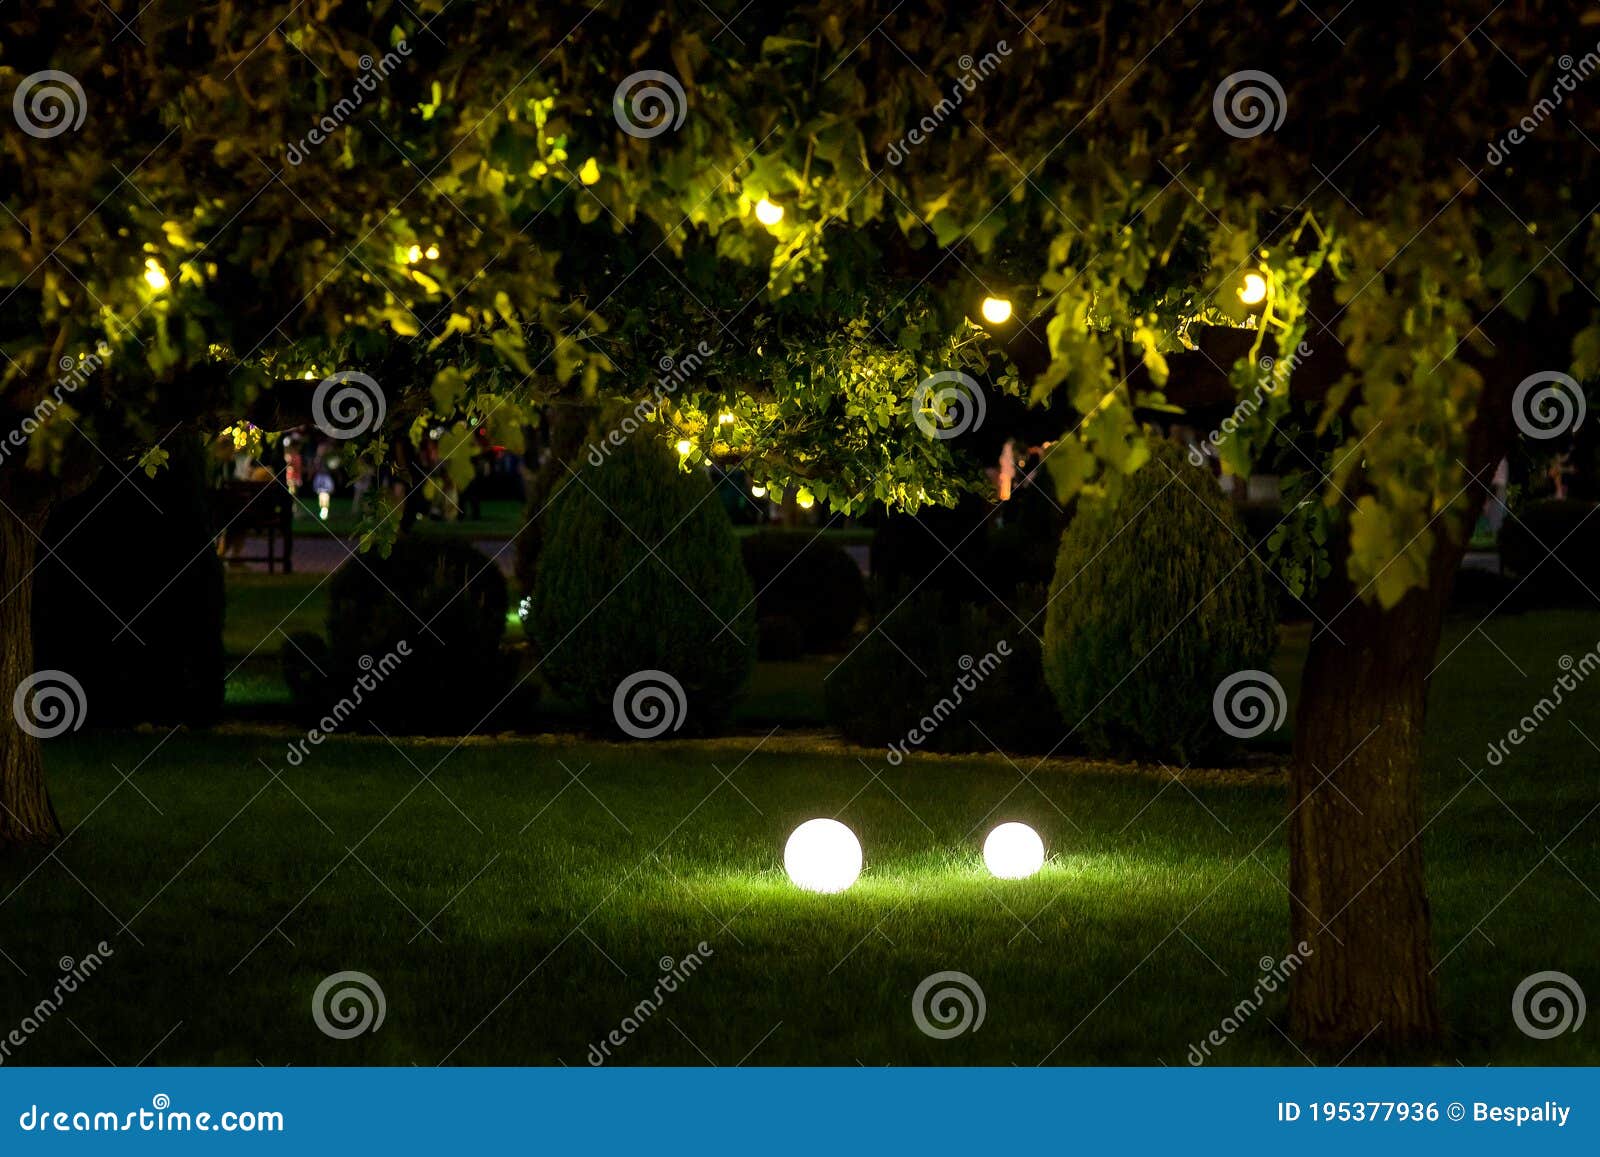 Jardín Iluminado En El Patio Trasero Con 2 Farolillos. Foto de archivo - de garganta: